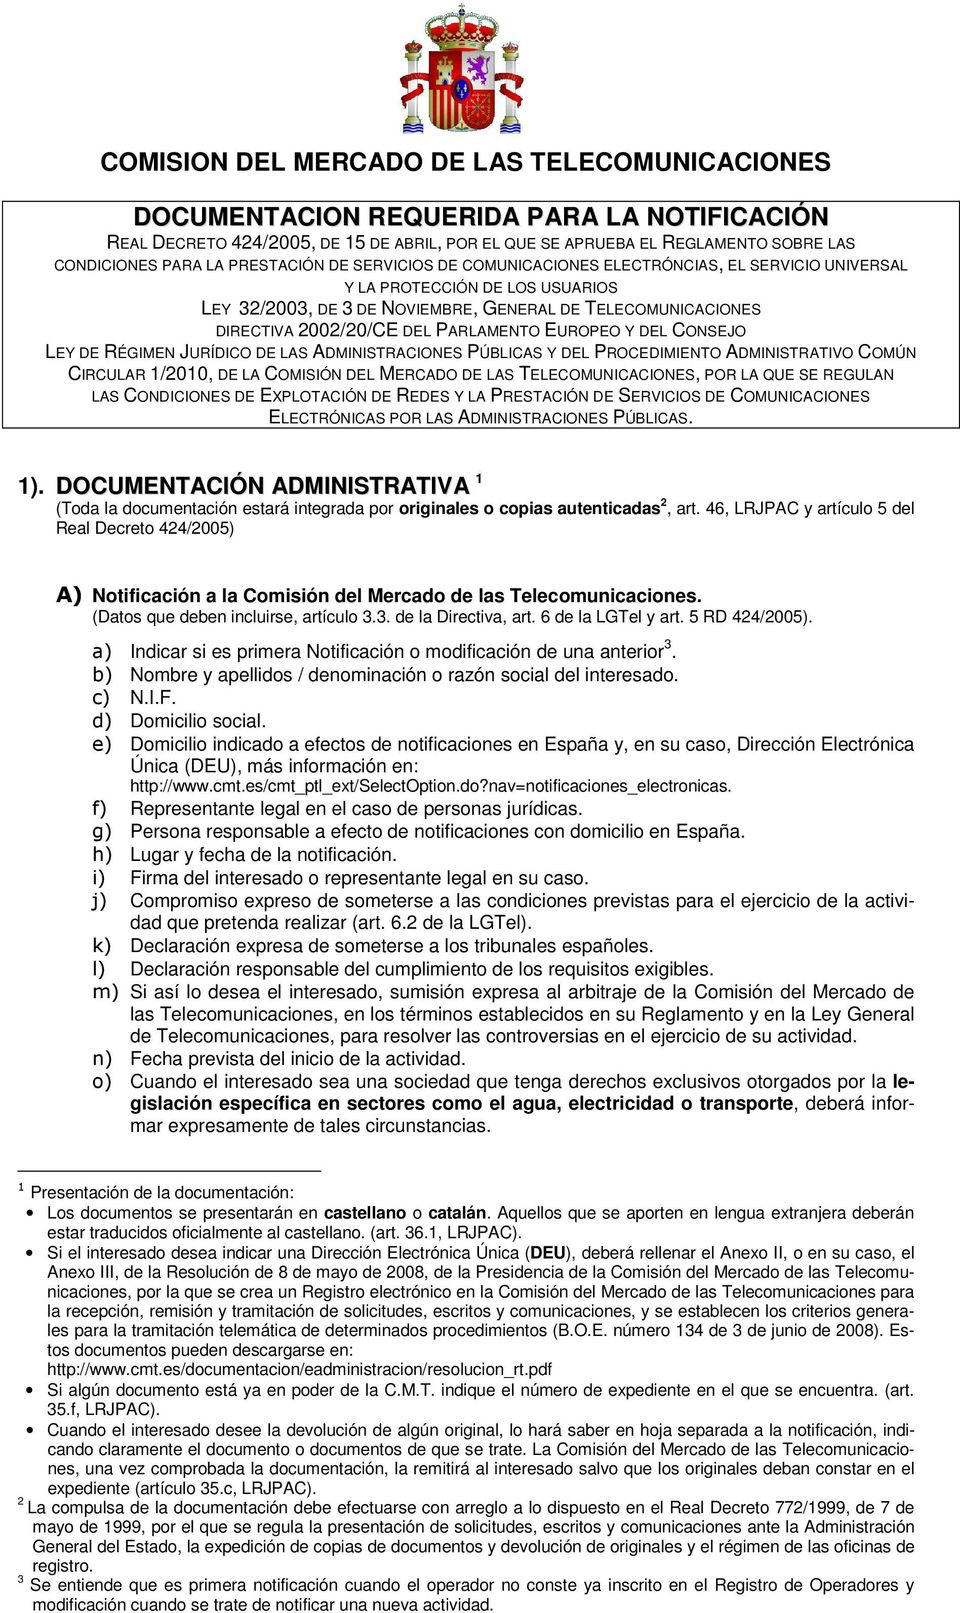 RÉGIMEN JURÍDICO DE LAS ADMINISTRACIONES PÚBLICAS Y DEL PROCEDIMIENTO ADMINISTRATIVO COMÚN CIRCULAR 1/2010, DE LA COMISIÓN DEL MERCADO DE LAS TELECOMUNICACIONES, POR LA QUE SE REGULAN LAS CONDICIONES